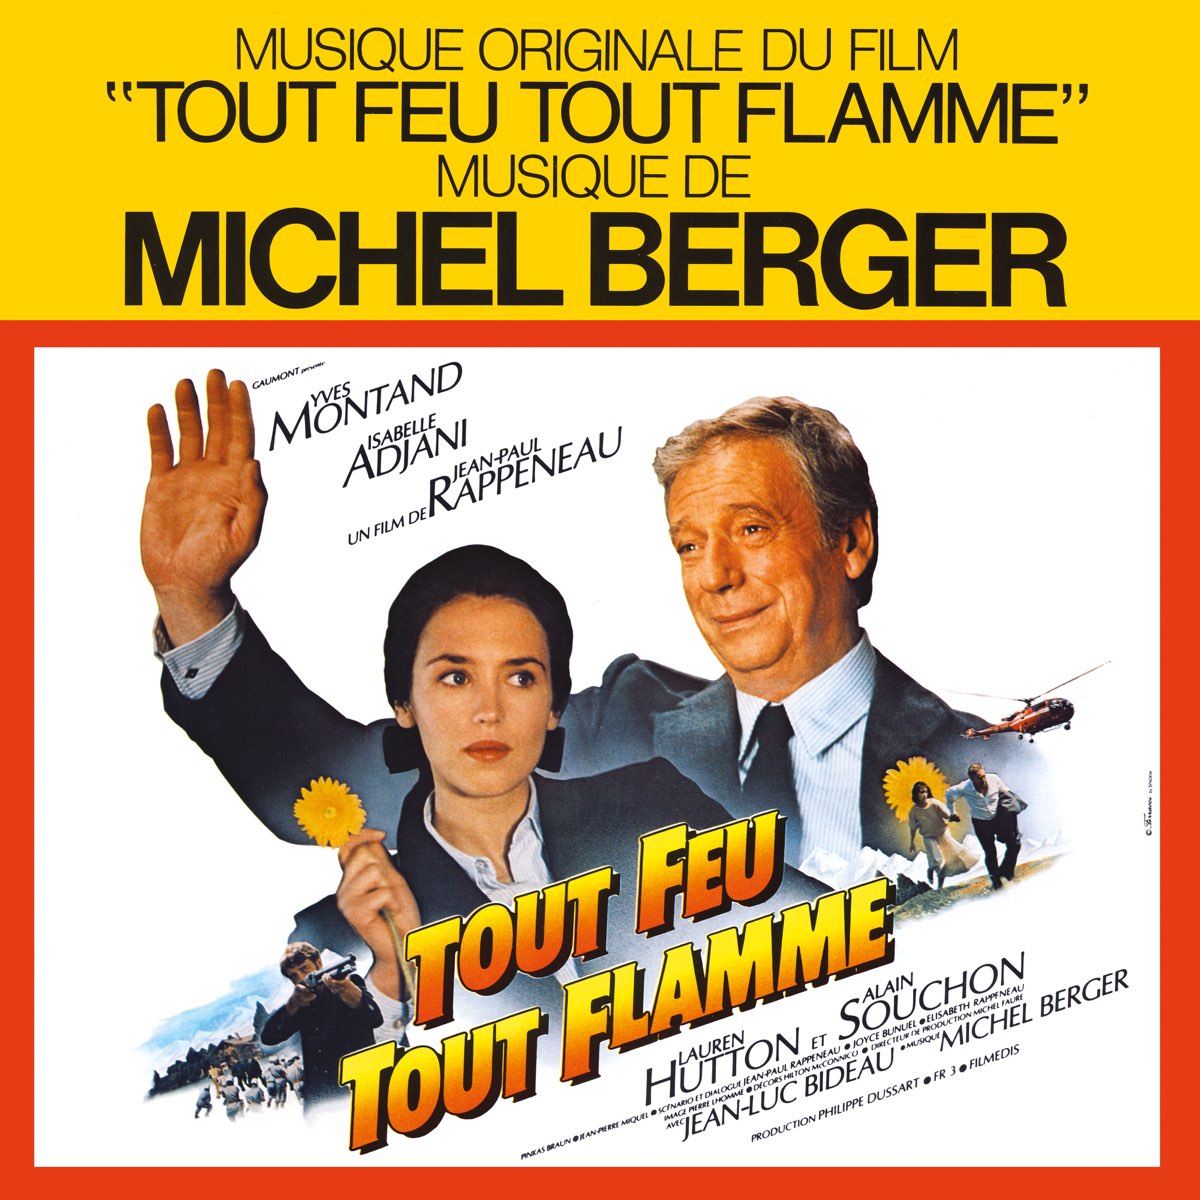 Tout feu tout flamme (Musique originale du film) – Album par Michel Berger  – Apple Music